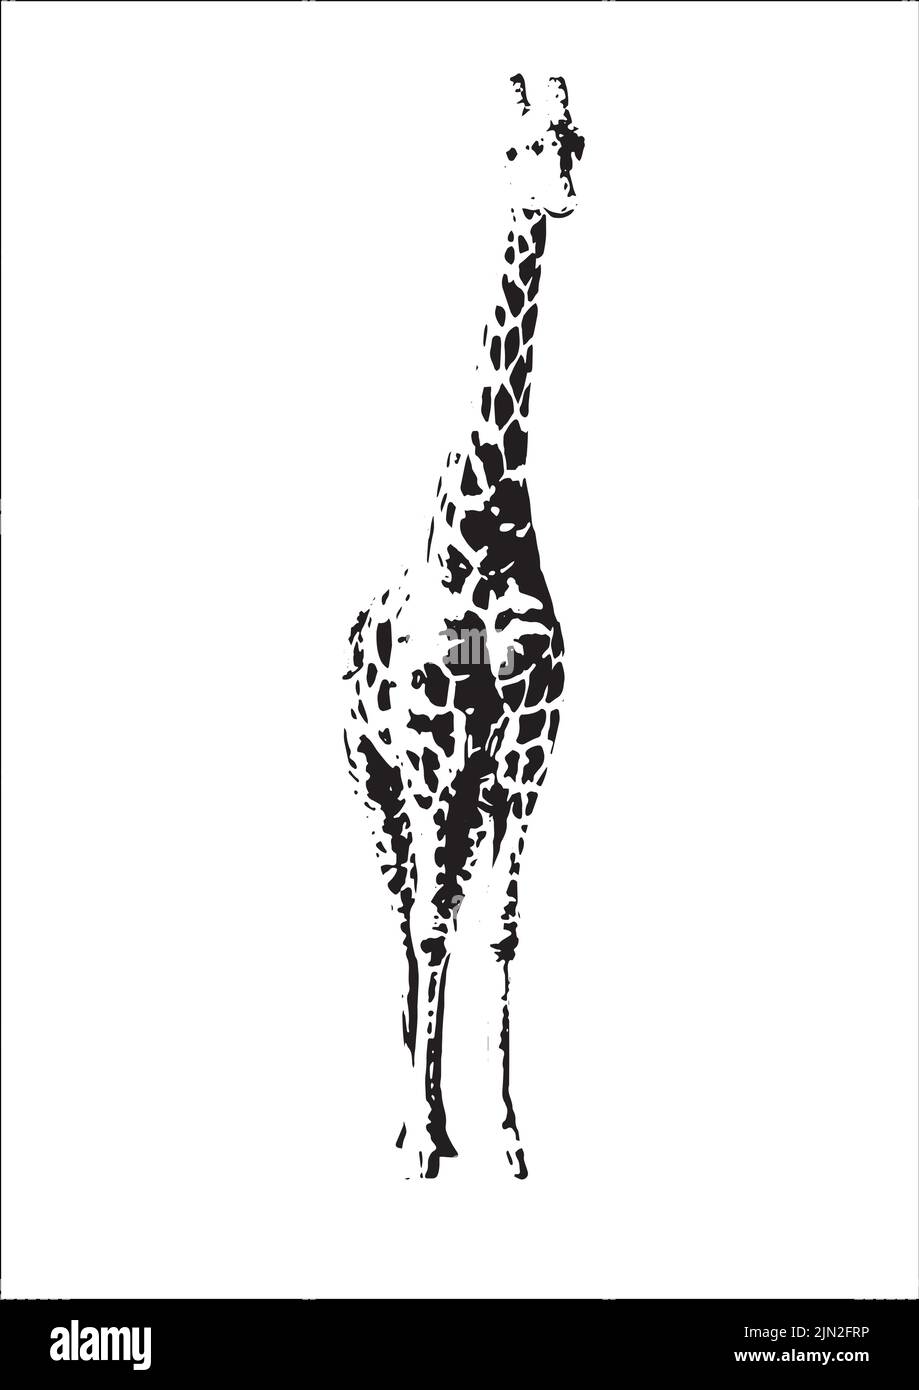 Giraffe art eps vecteur pour les tirages et le merchandising. L'art girafe pour les logos et le design. Toile girafe pour les imprimés et les tee-shirts. Illustration de Vecteur